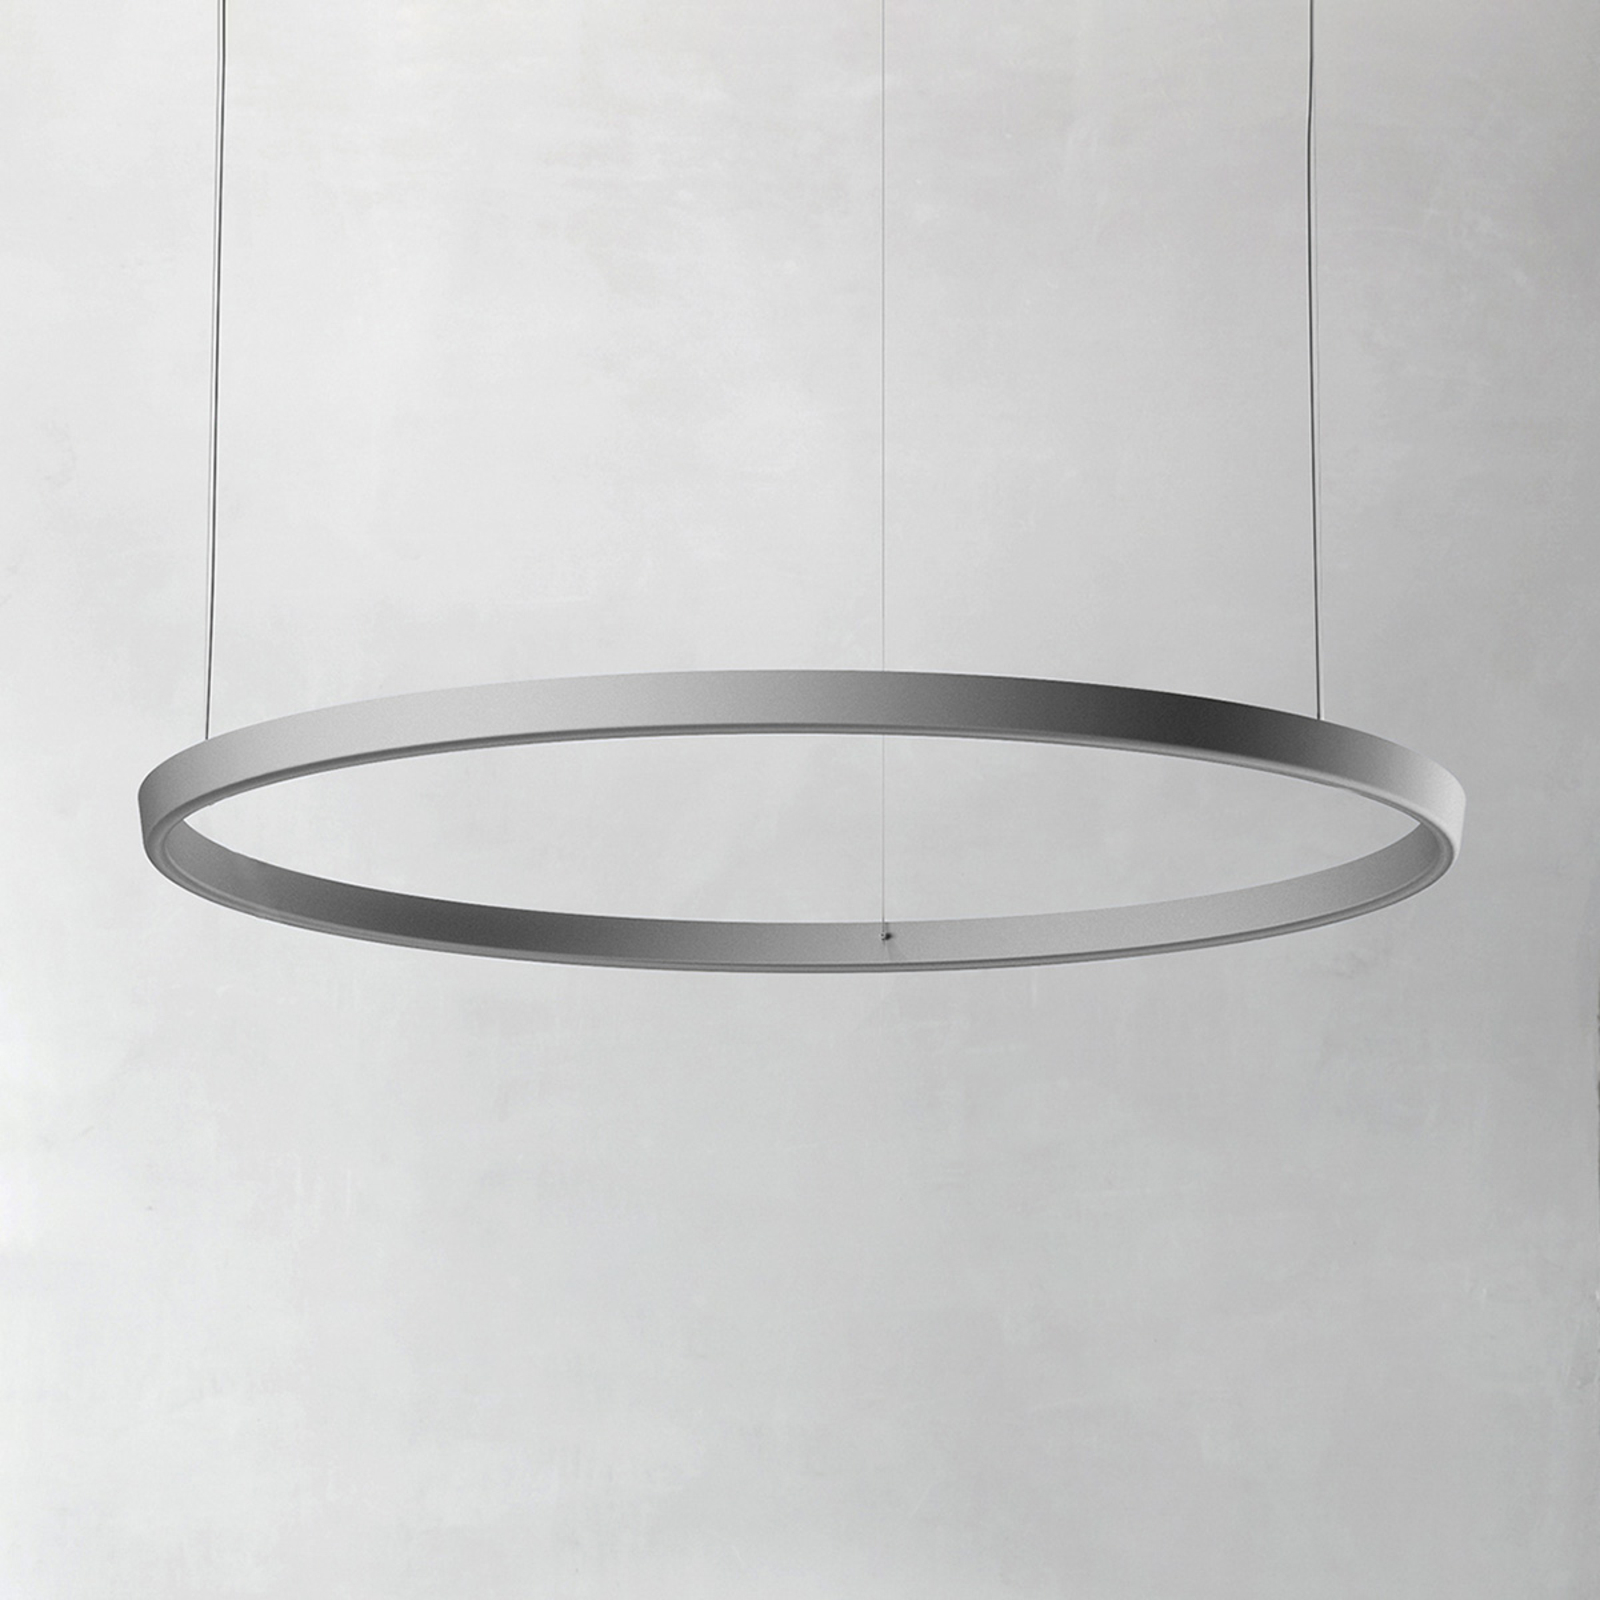 Luceplan Compendium Circle 110cm, aluminio